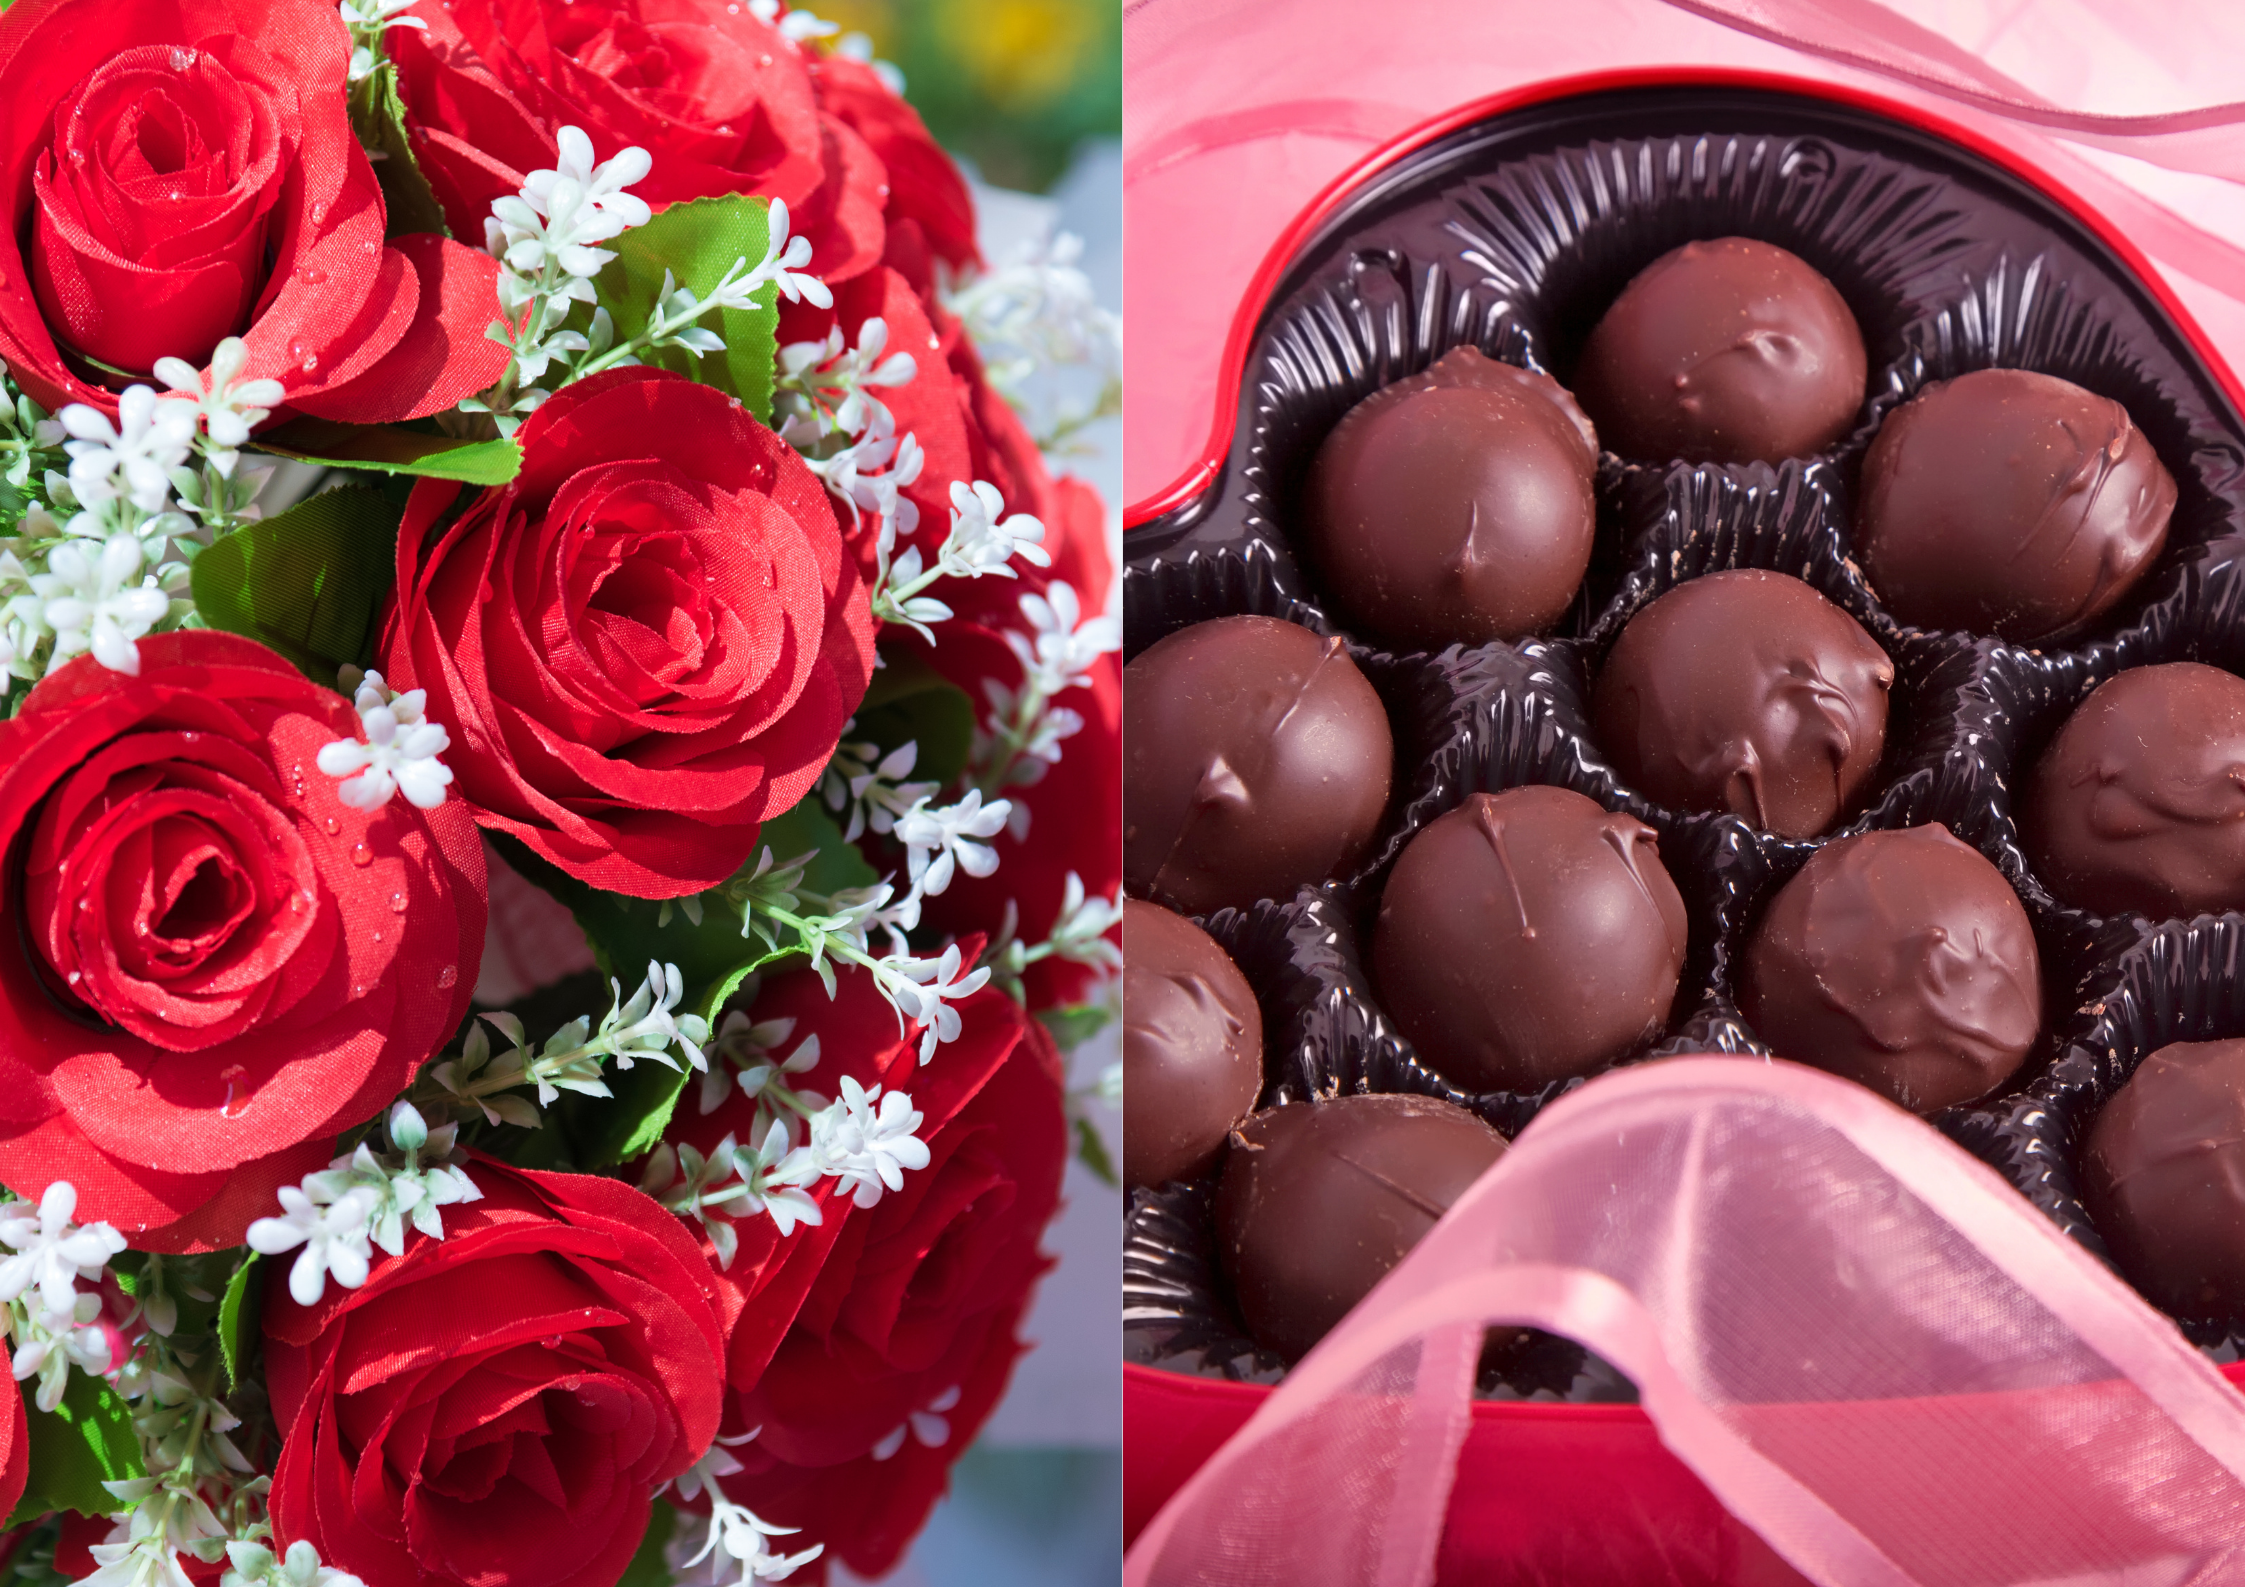 Hoa hồng đỏ, socola là những món quà phổ biến trong ngày Valentine. Ảnh minh họa: Phương Thảo